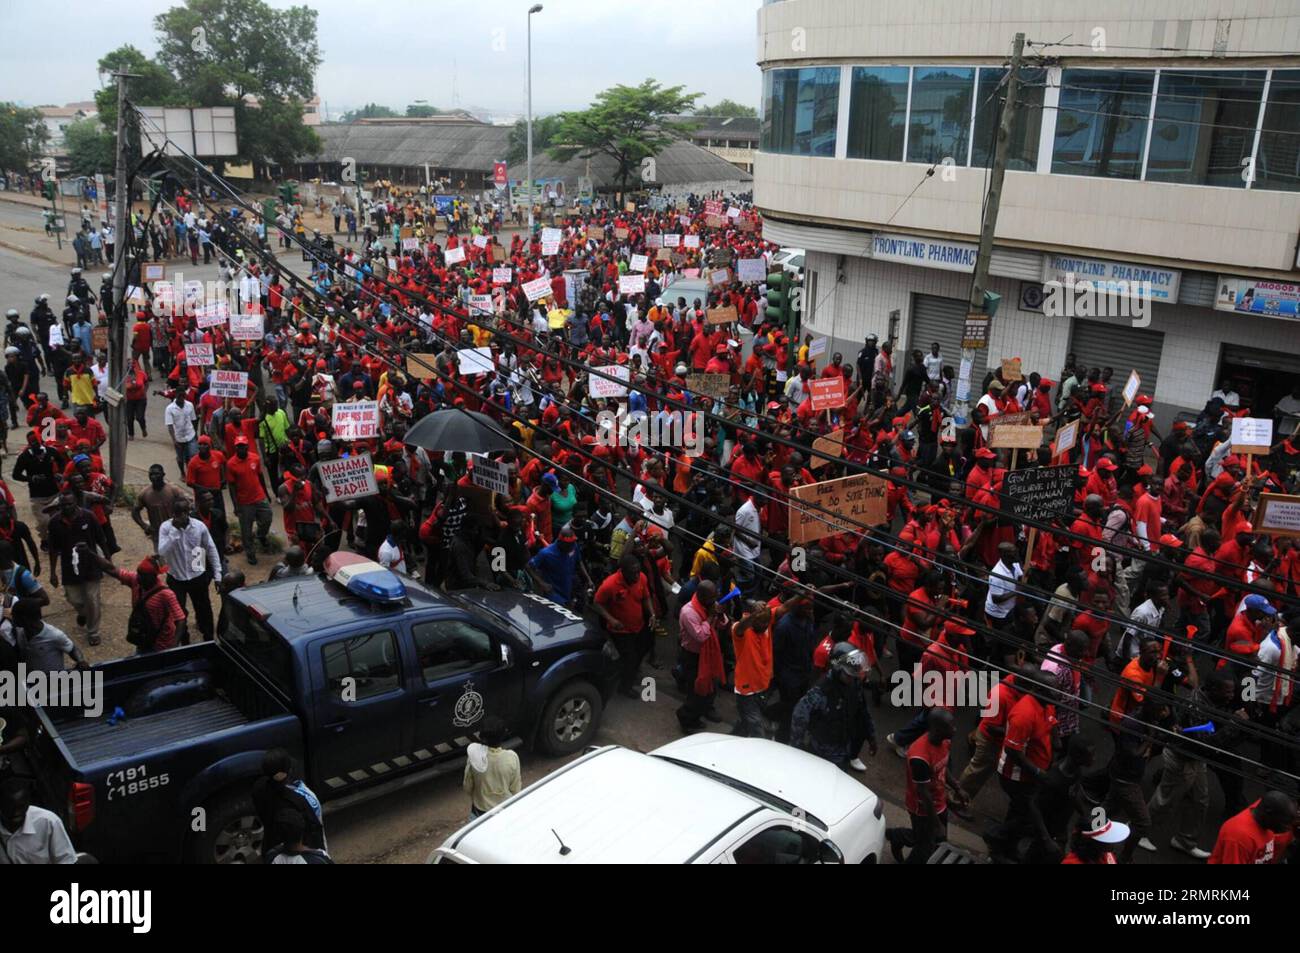 (140724) -- ACCRA, 24. Juli 2014 (Xinhua) -- Menschen demonstrieren mit Parolen in den Händen auf den Straßen von Accra, der Hauptstadt Ghanas, 24. Juli 2014. Tausende von Menschen waren am Donnerstag auf einer eintägigen Demonstration, um gegen die Verschlechterung der Wirtschaftslage im westafrikanischen Ghana zu protestieren. (Xinhua/Lin Xiaowei) GHANA-ACCRA-LABOUR-DEMONSTRATION PUBLICATIONxNOTxINxCHN Accra 24. Juli 2014 XINHUA-Prominente demonstrieren mit Parolen in der Hand AUF den Straßen von Accra, der Hauptstadt Ghanas 24. Juli 2014 Tausende von Prominenten waren AUF einer eintägigen Demonstration aus Protest gegen die Verschlechterung Stockfoto